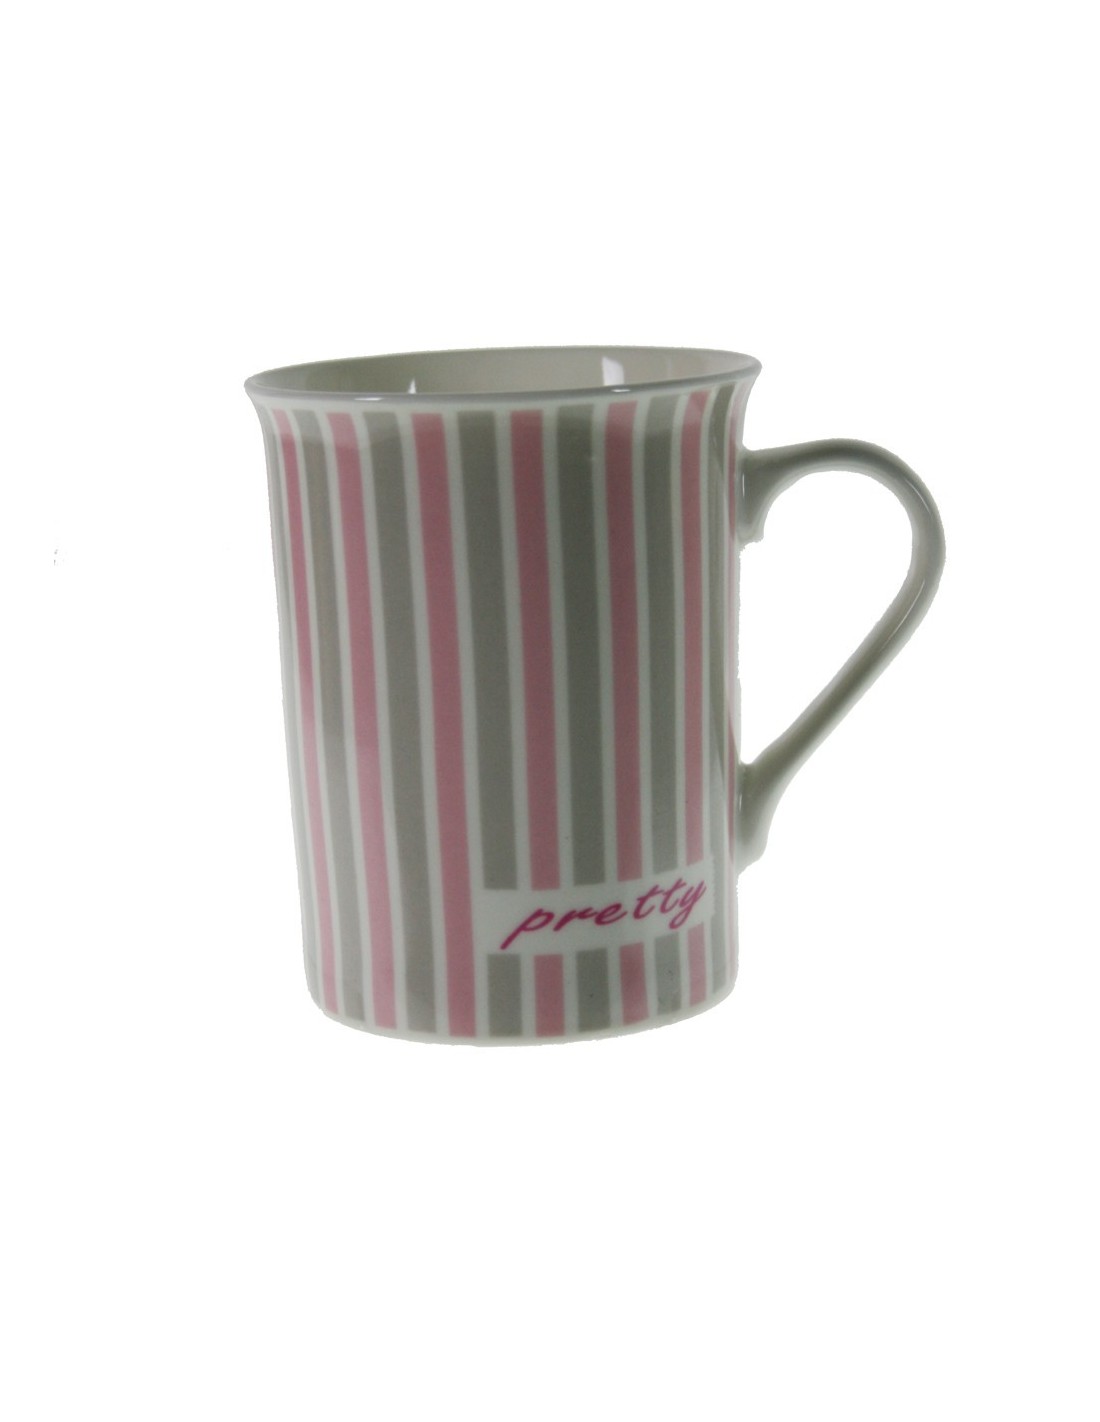  Taza mug taza para café de porcelana color rosa diseño rayas estilo vintage para los desayunos